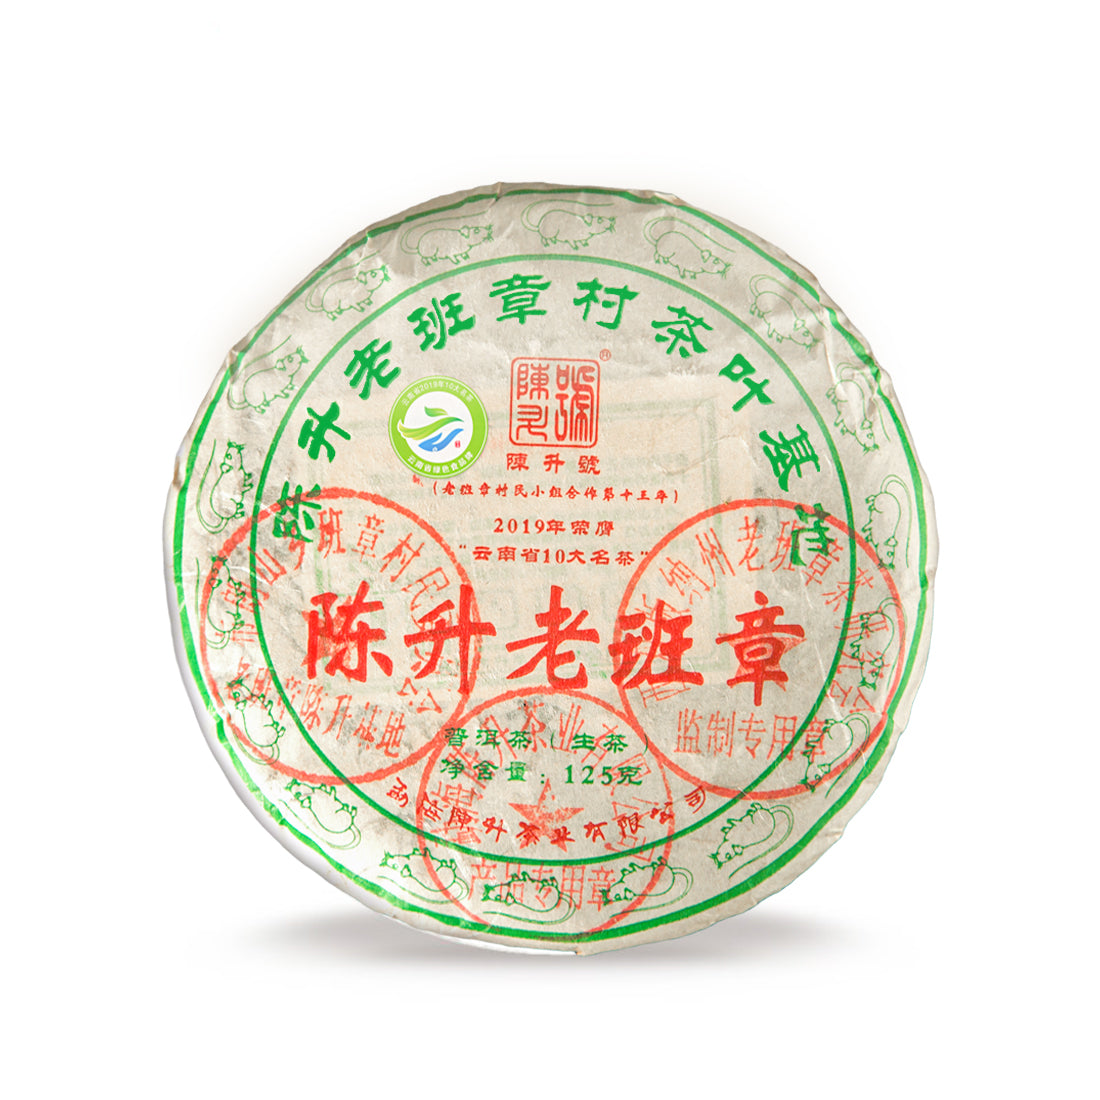 Chen Sheng Hao 2020 Lao Ban Zhang Raw Pu'er Tea Cake